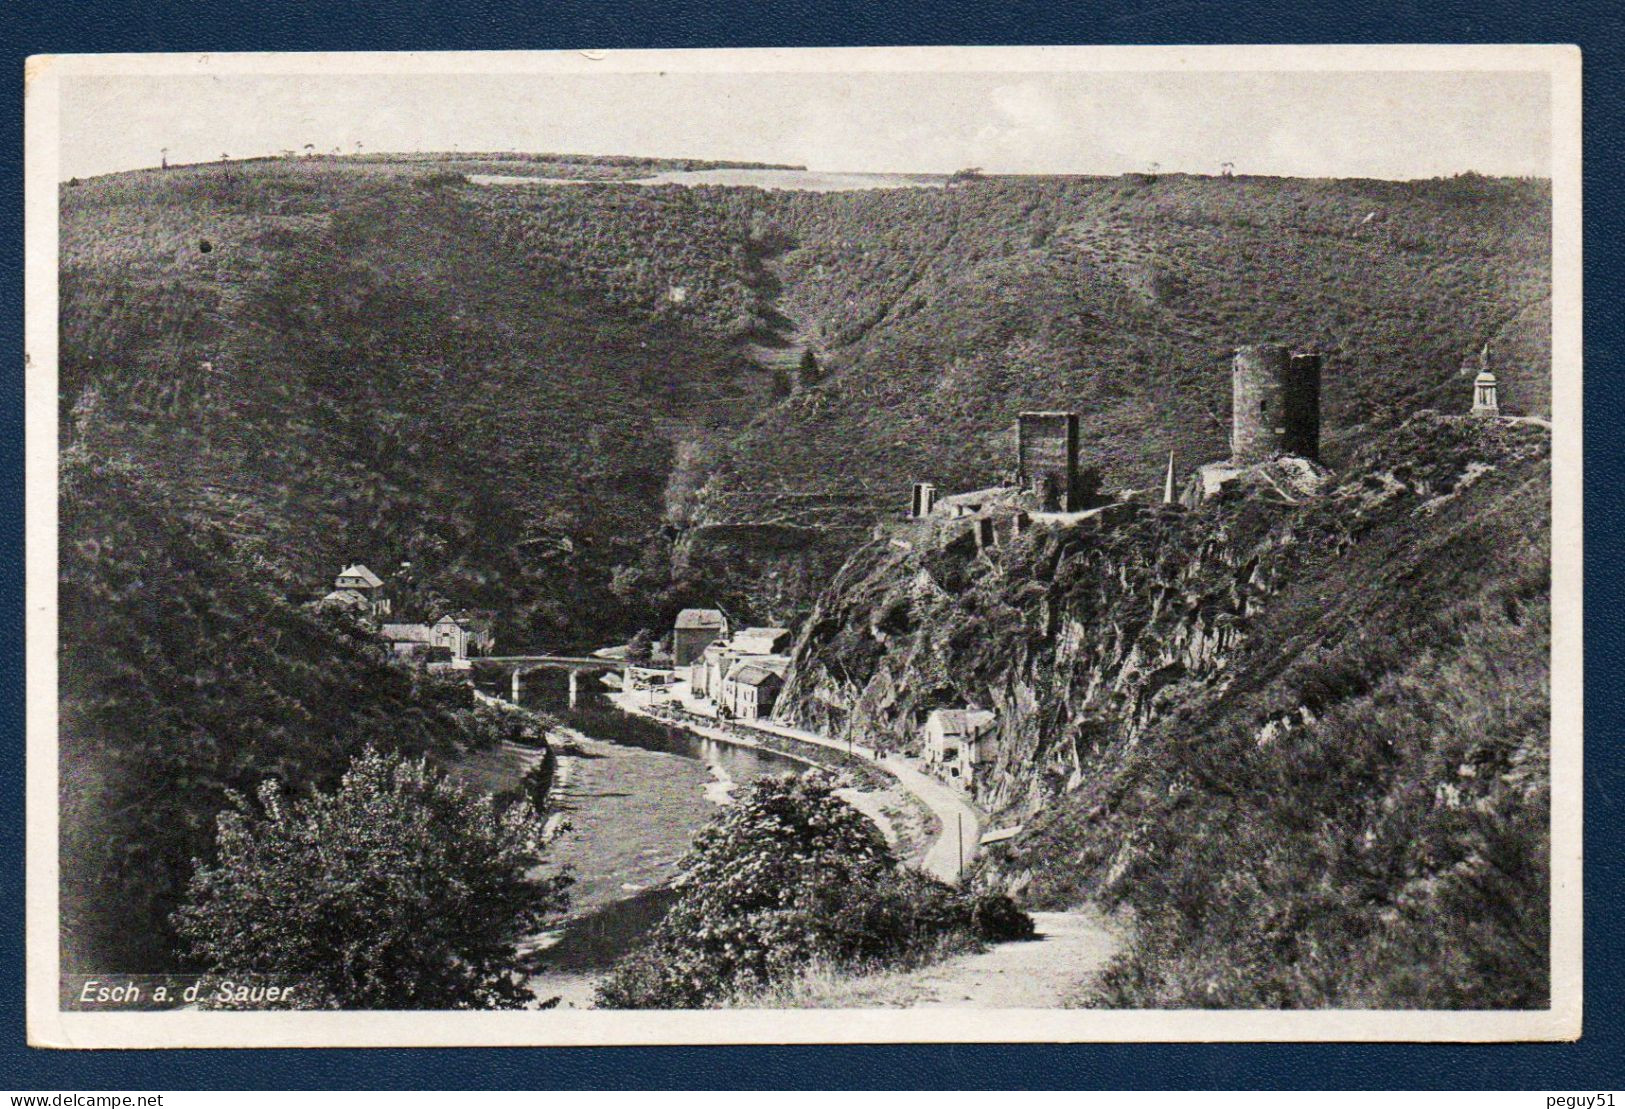 Luxembourg. Esch-sur-Sûre. Pont à 3 Arches Sur La Sûre. Ruines Du Château. Hôtel Des Ardennes (Arthur Ferber). 1948 - Esch-sur-Sure